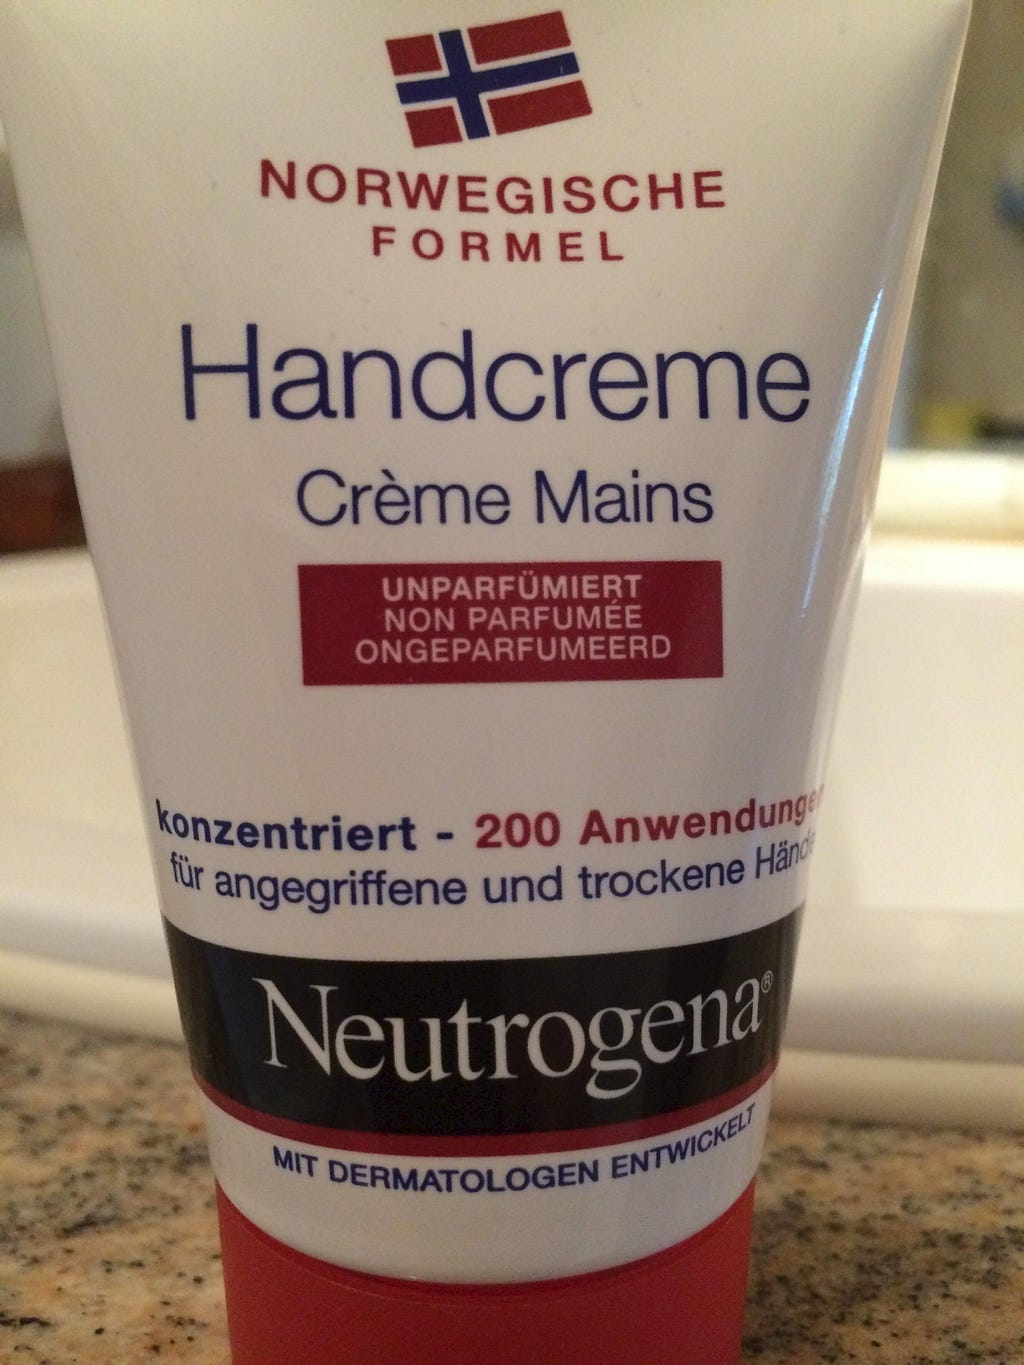 1. Understanding the Benefits of Neutrogena Men's Shaving Cream